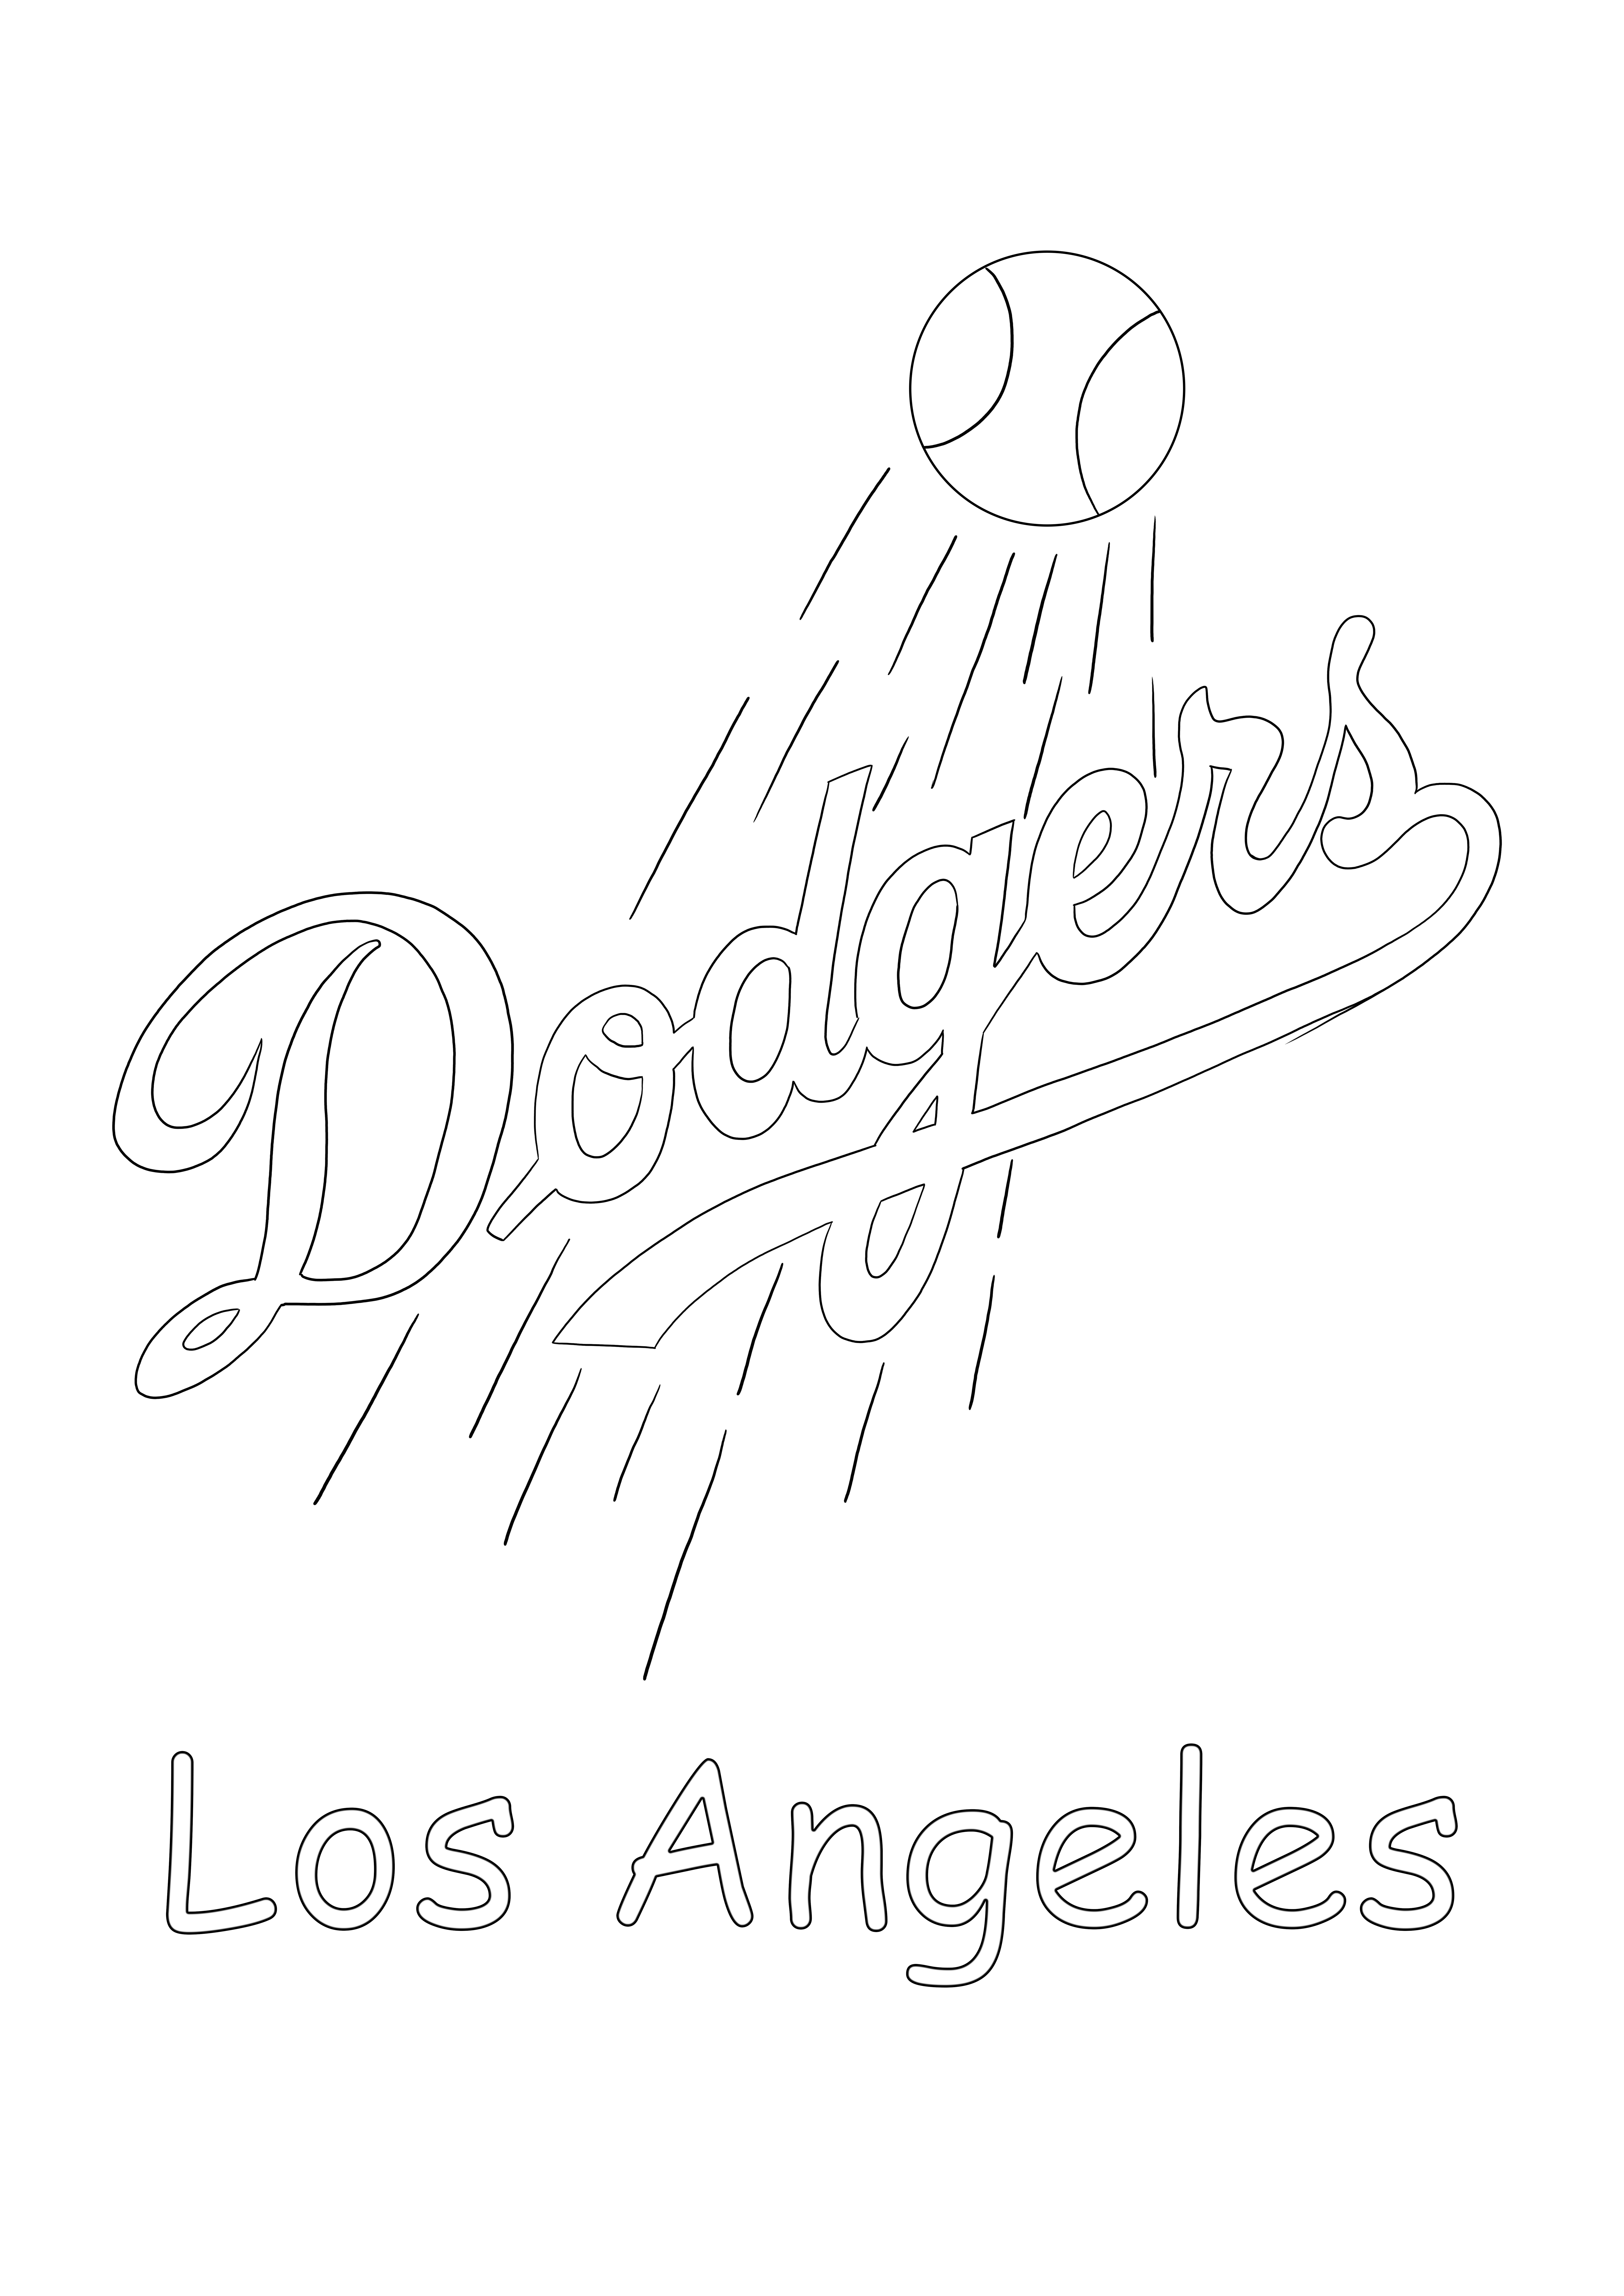 Los Angeles Dodgers-logo gratis te printen en in te kleuren voor alle MLB-fans kleurplaat